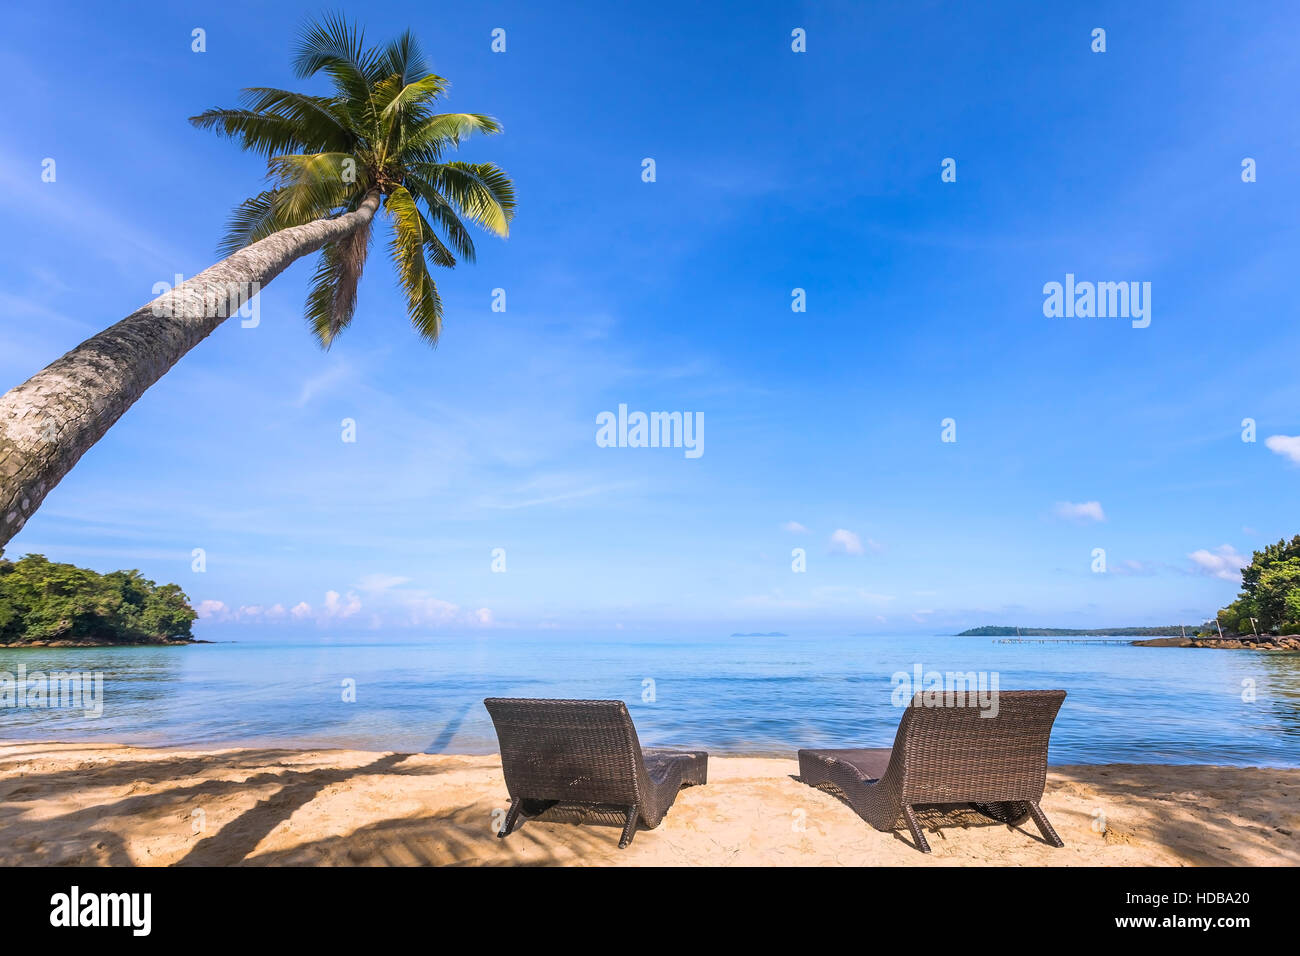 Paradise tropical Beach avec un magnifique palmier et deux transats sur le sable, des vacances reposantes Banque D'Images